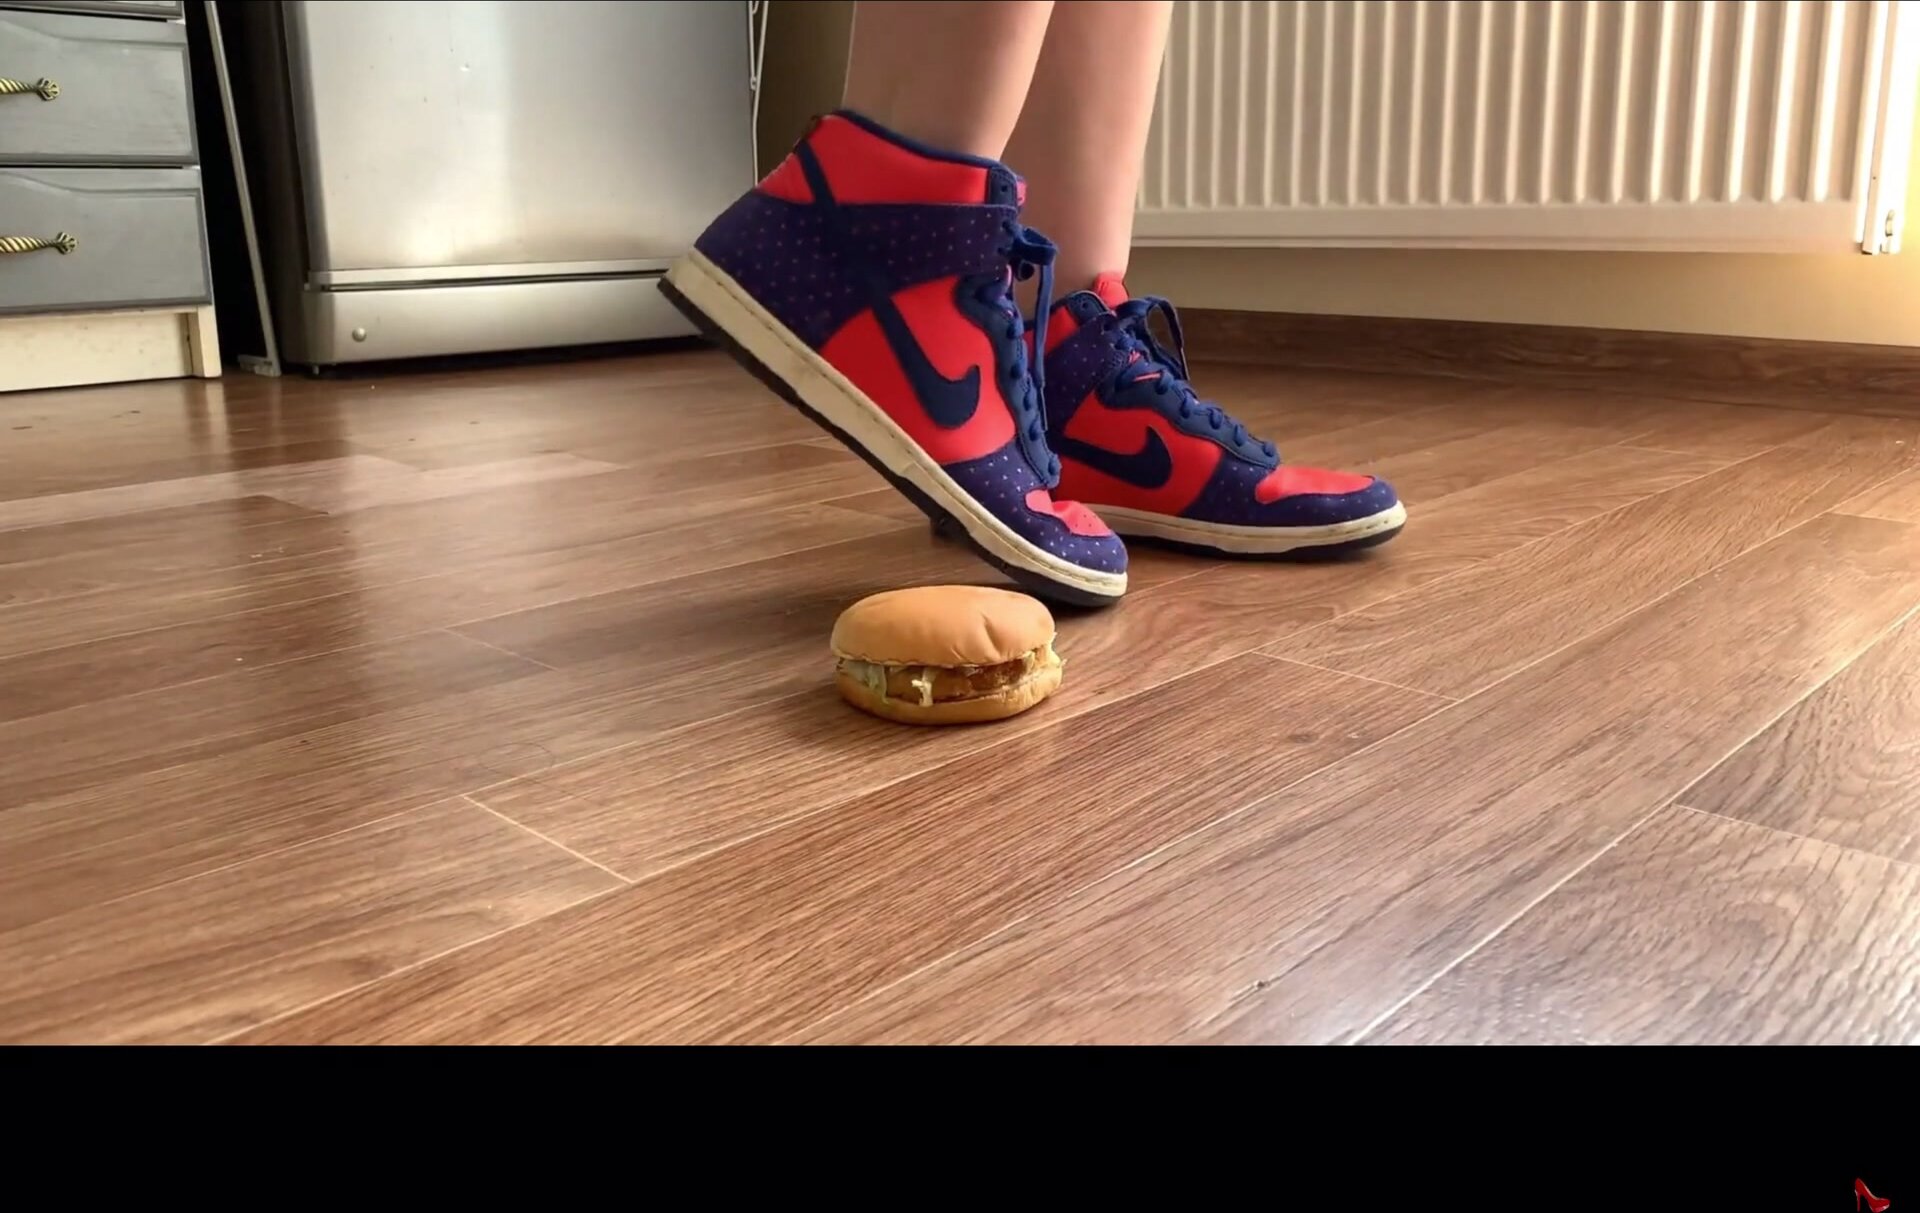 Girl sneakers crush Burger